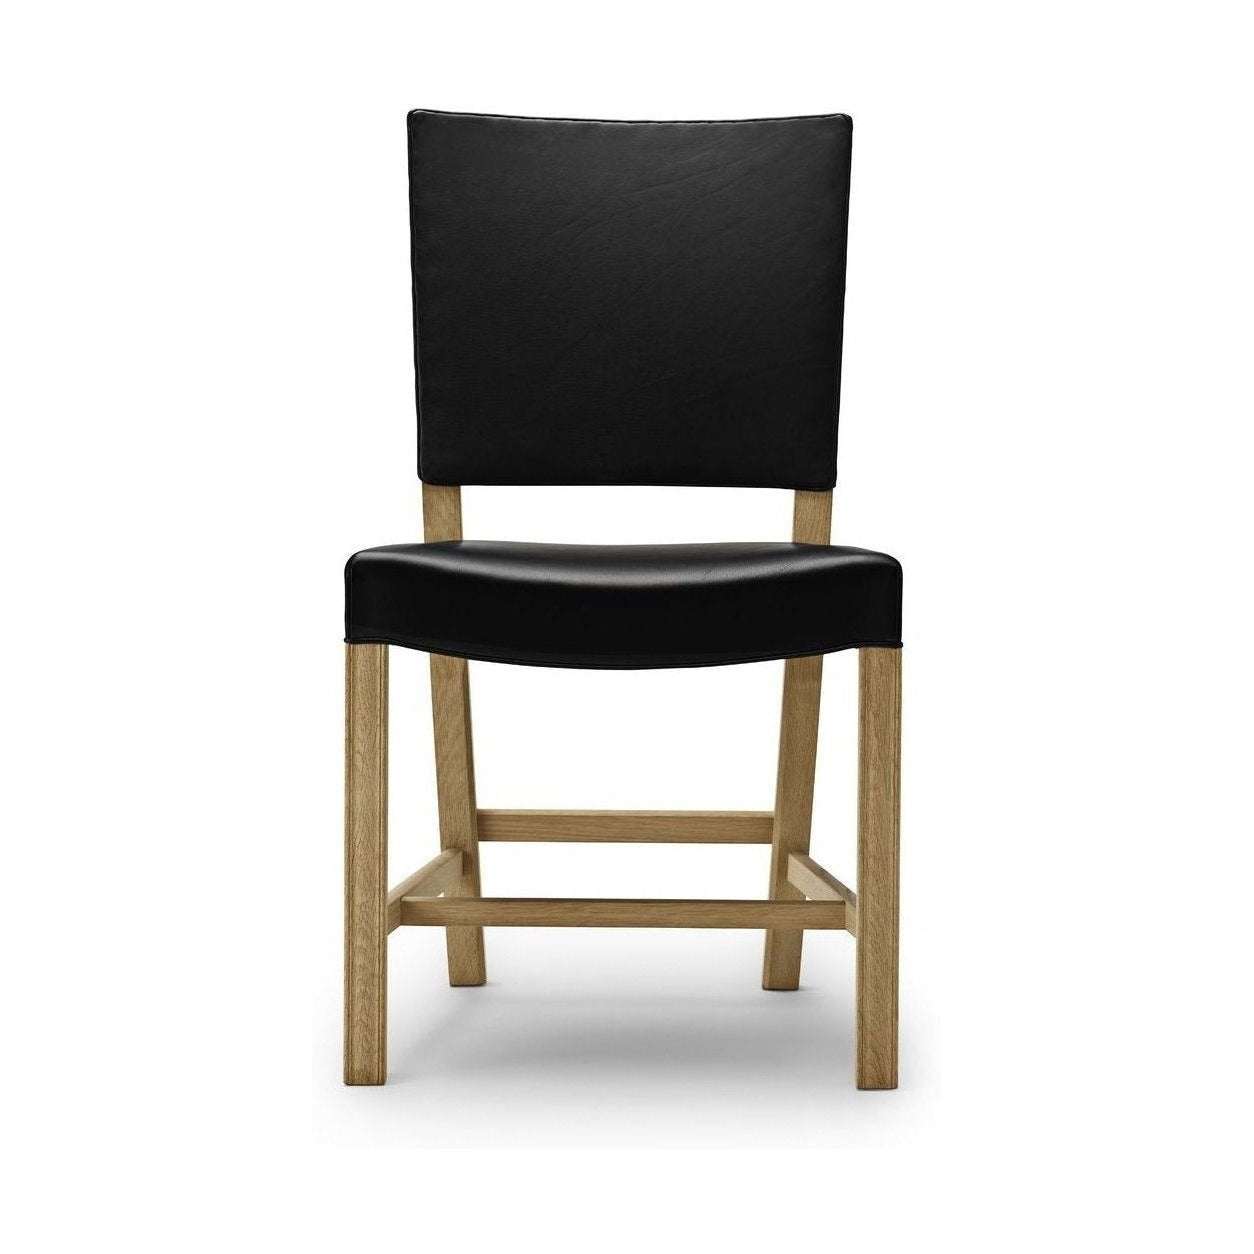 Carl Hansen Den röda stolen, 58 cm